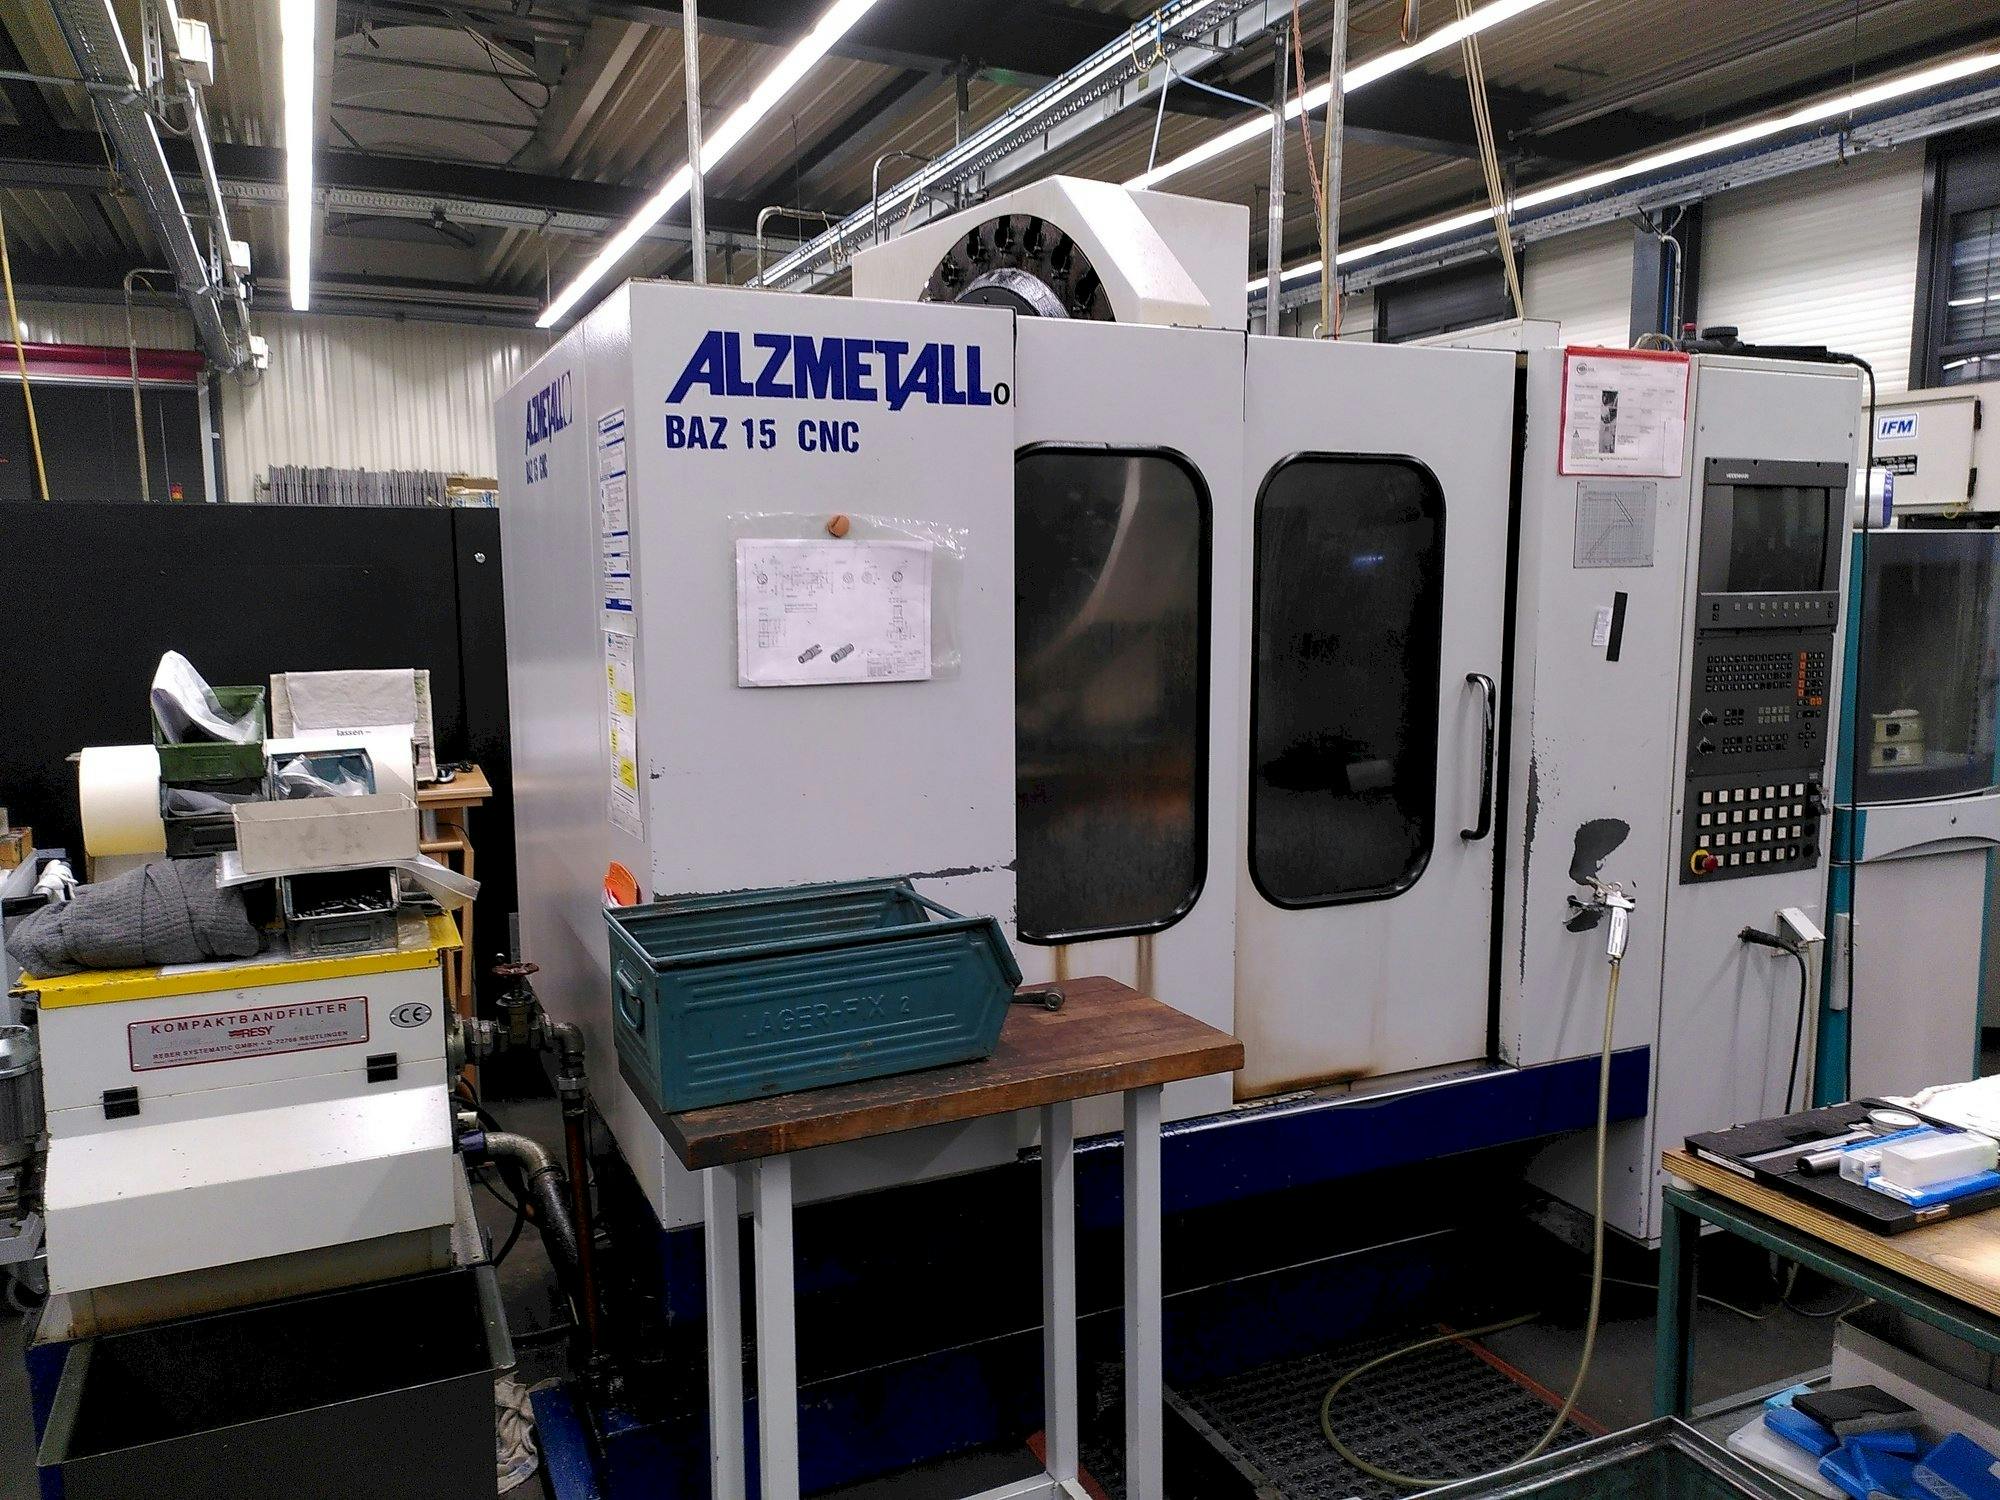 Vista frontal de la máquina Alzmetall BAZ 15 CNC